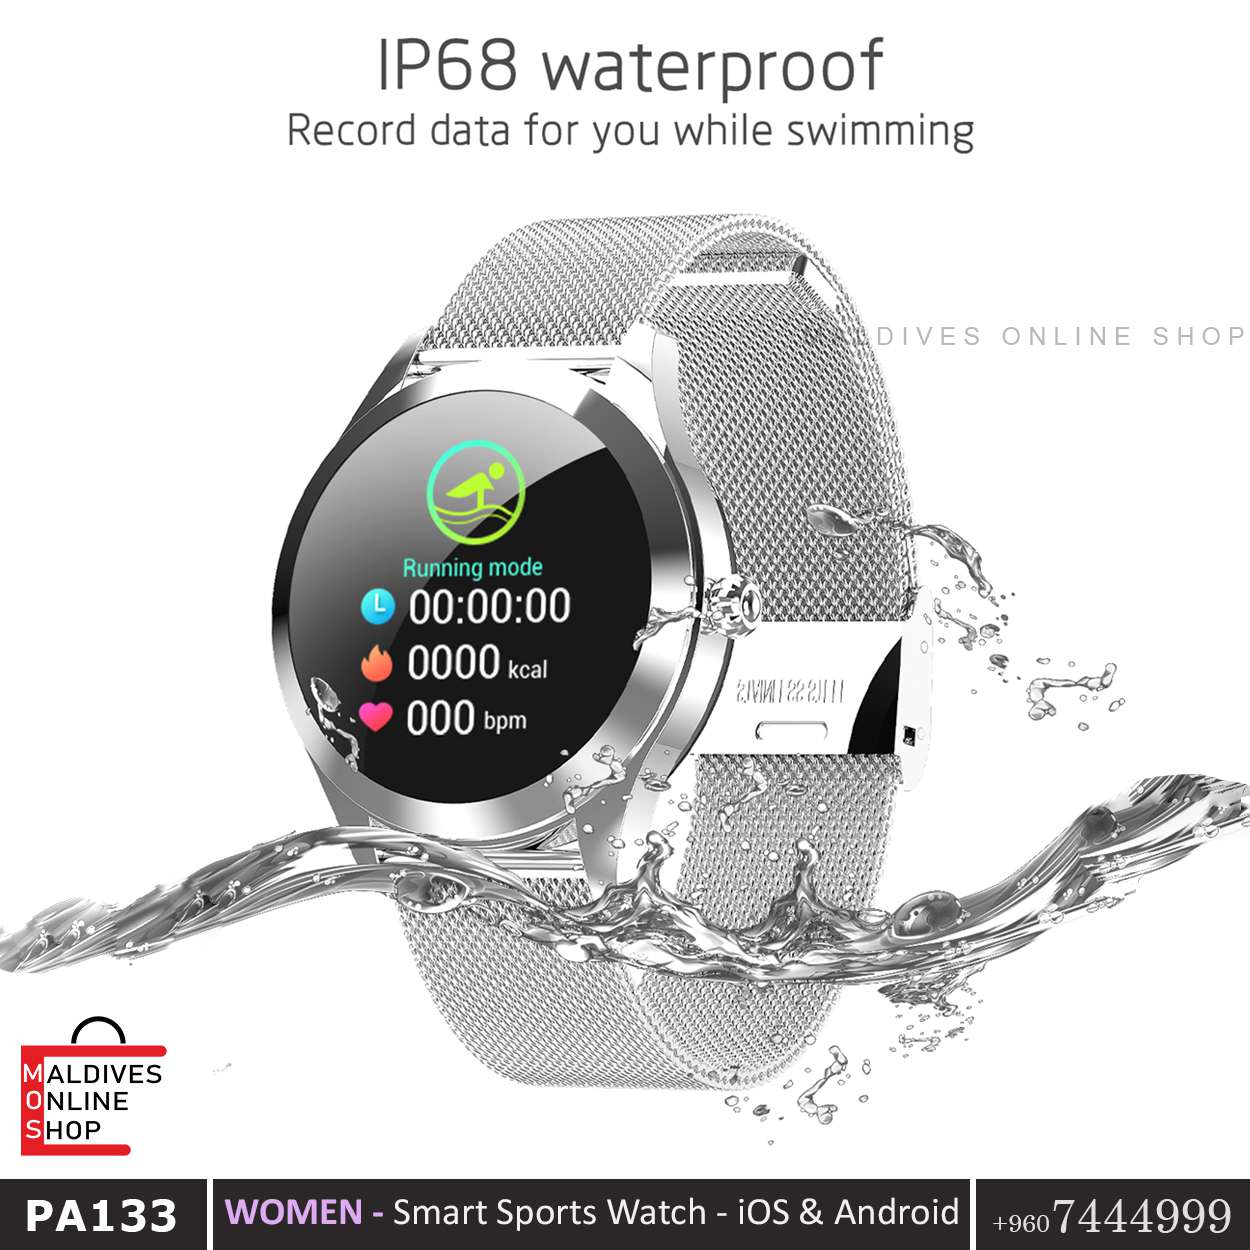 PA133 Waterproof - Fitness Tracker - Smart Watch